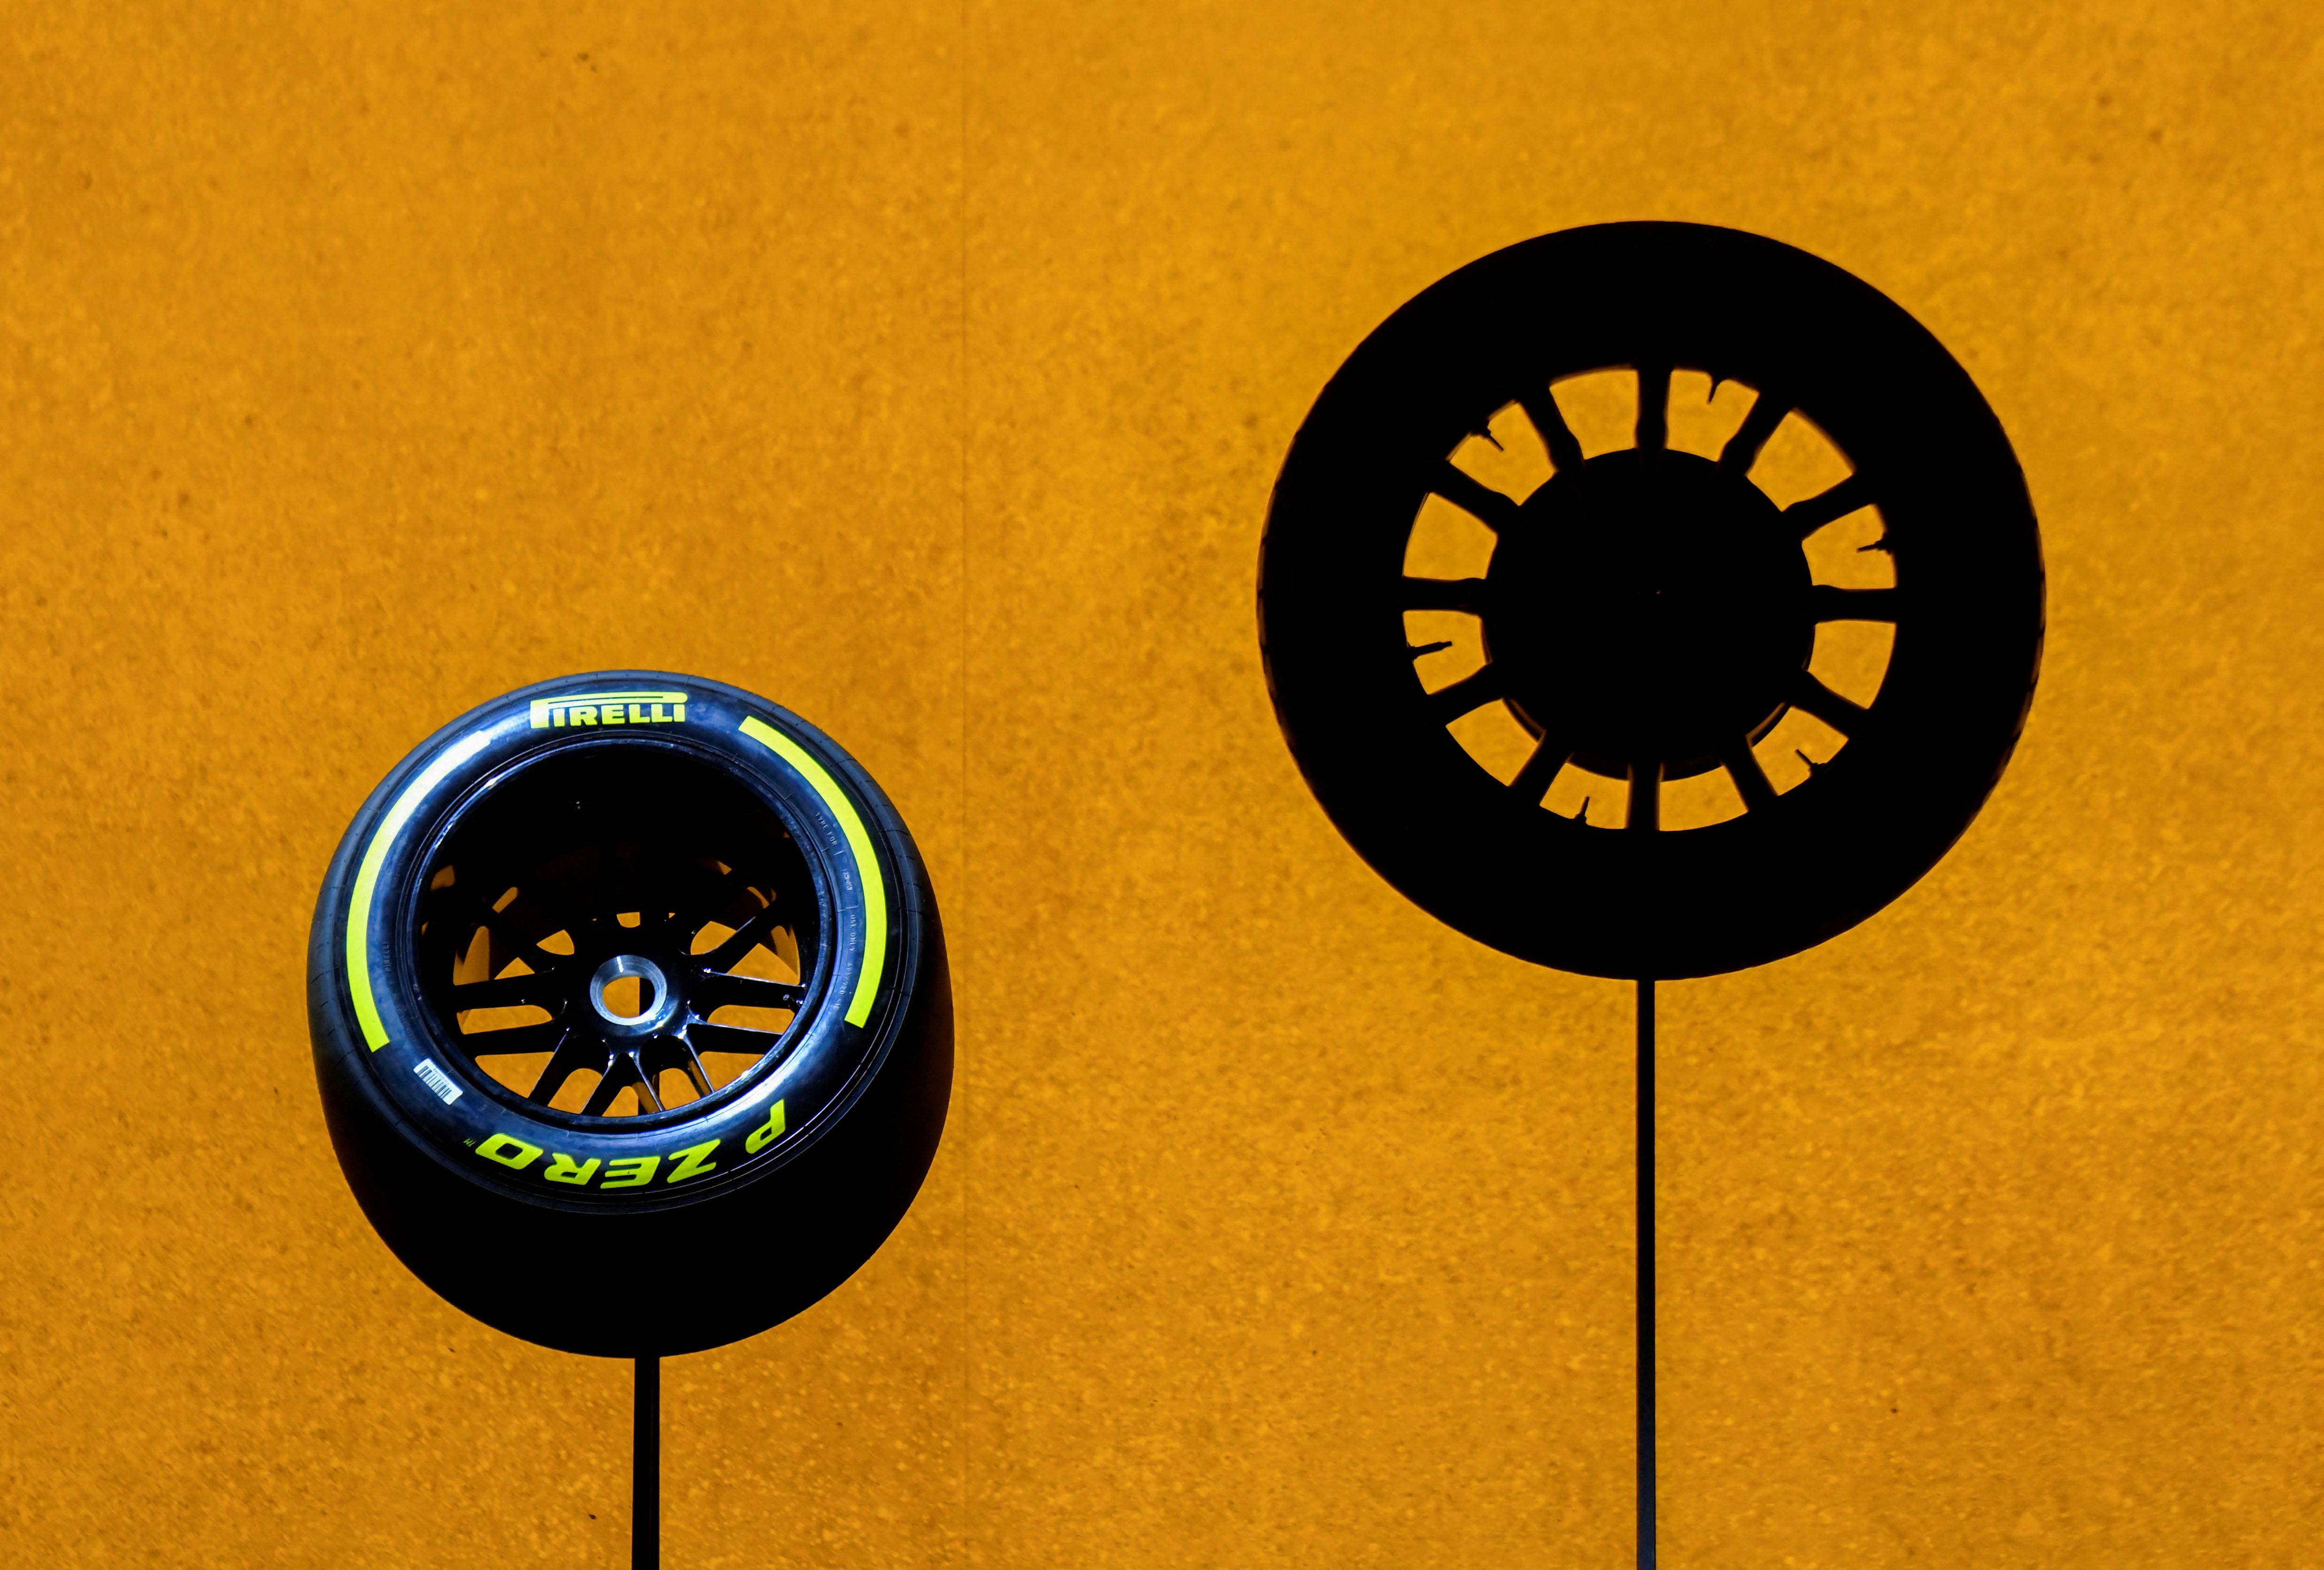 El fabricante italiano de neumáticos Pirelli celebra su 150 aniversario